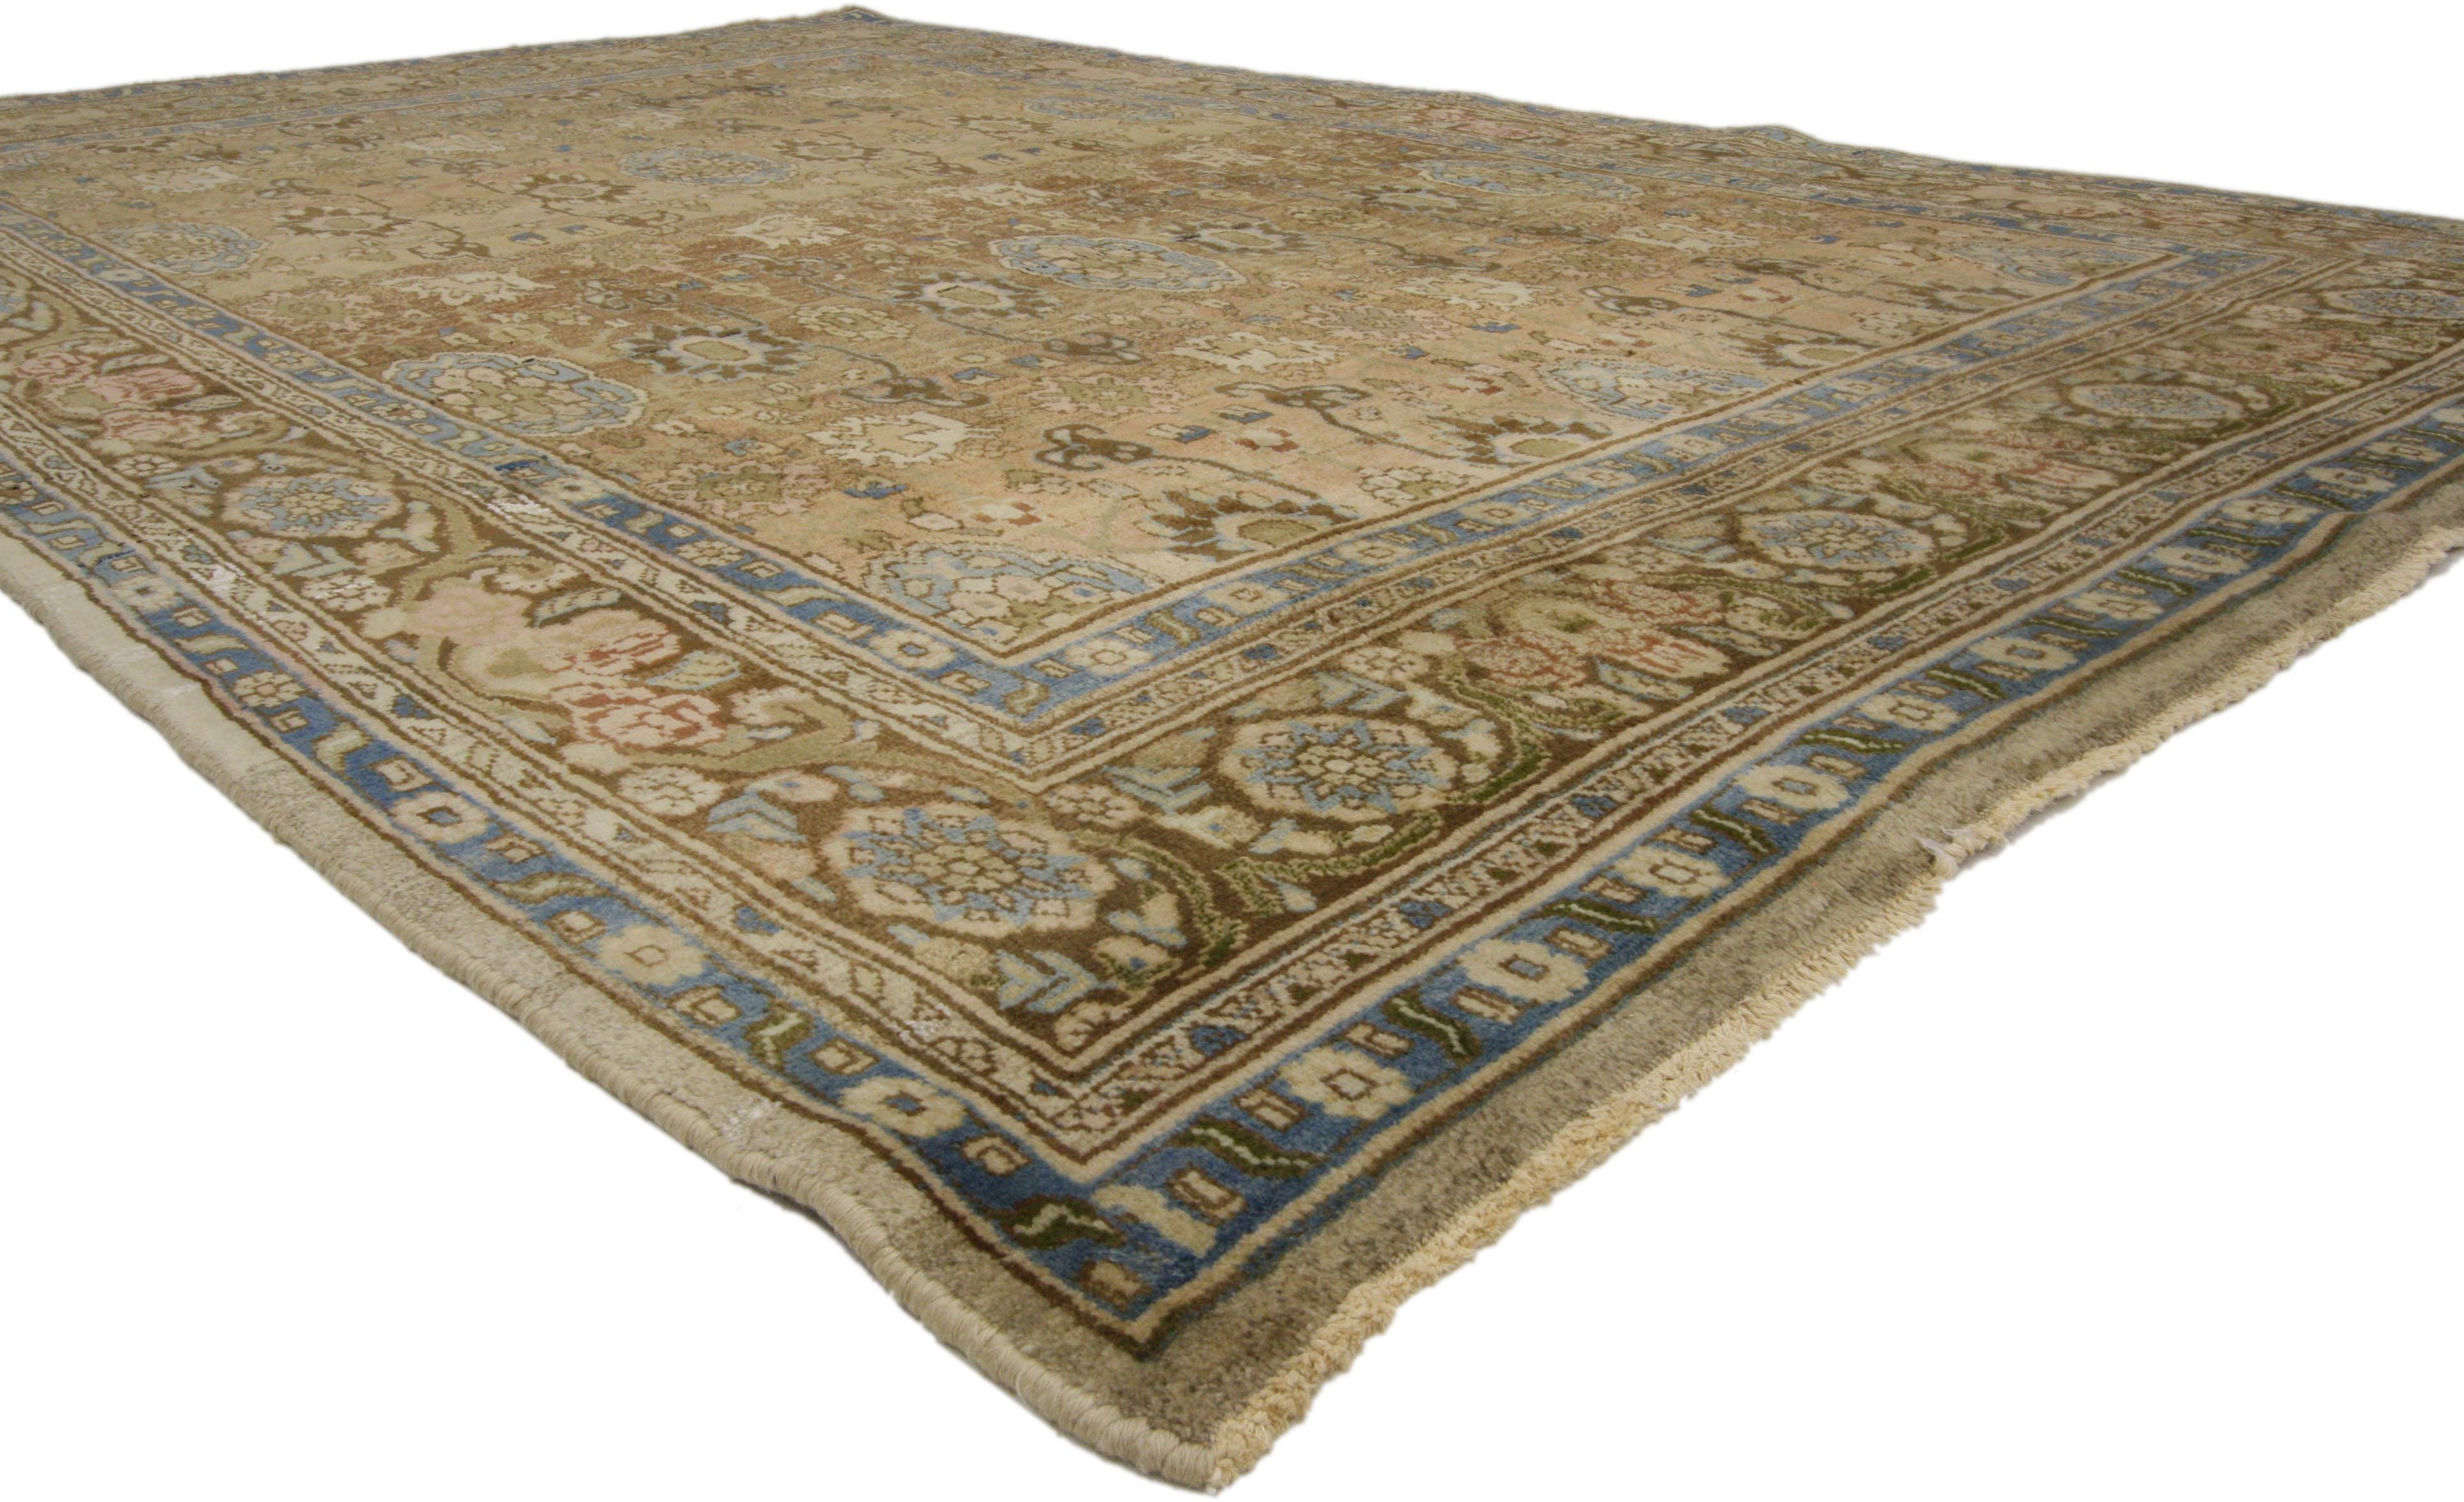 75966 Vintage Persian Hamadan Rug 06'09 x 10'11. Chaleureux et accueillant, ce tapis persan Hamadan vintage en laine nouée à la main présente un motif botanique sur toute sa surface, décoré de fleurs, de motifs feuillus stylisés et de médaillons.